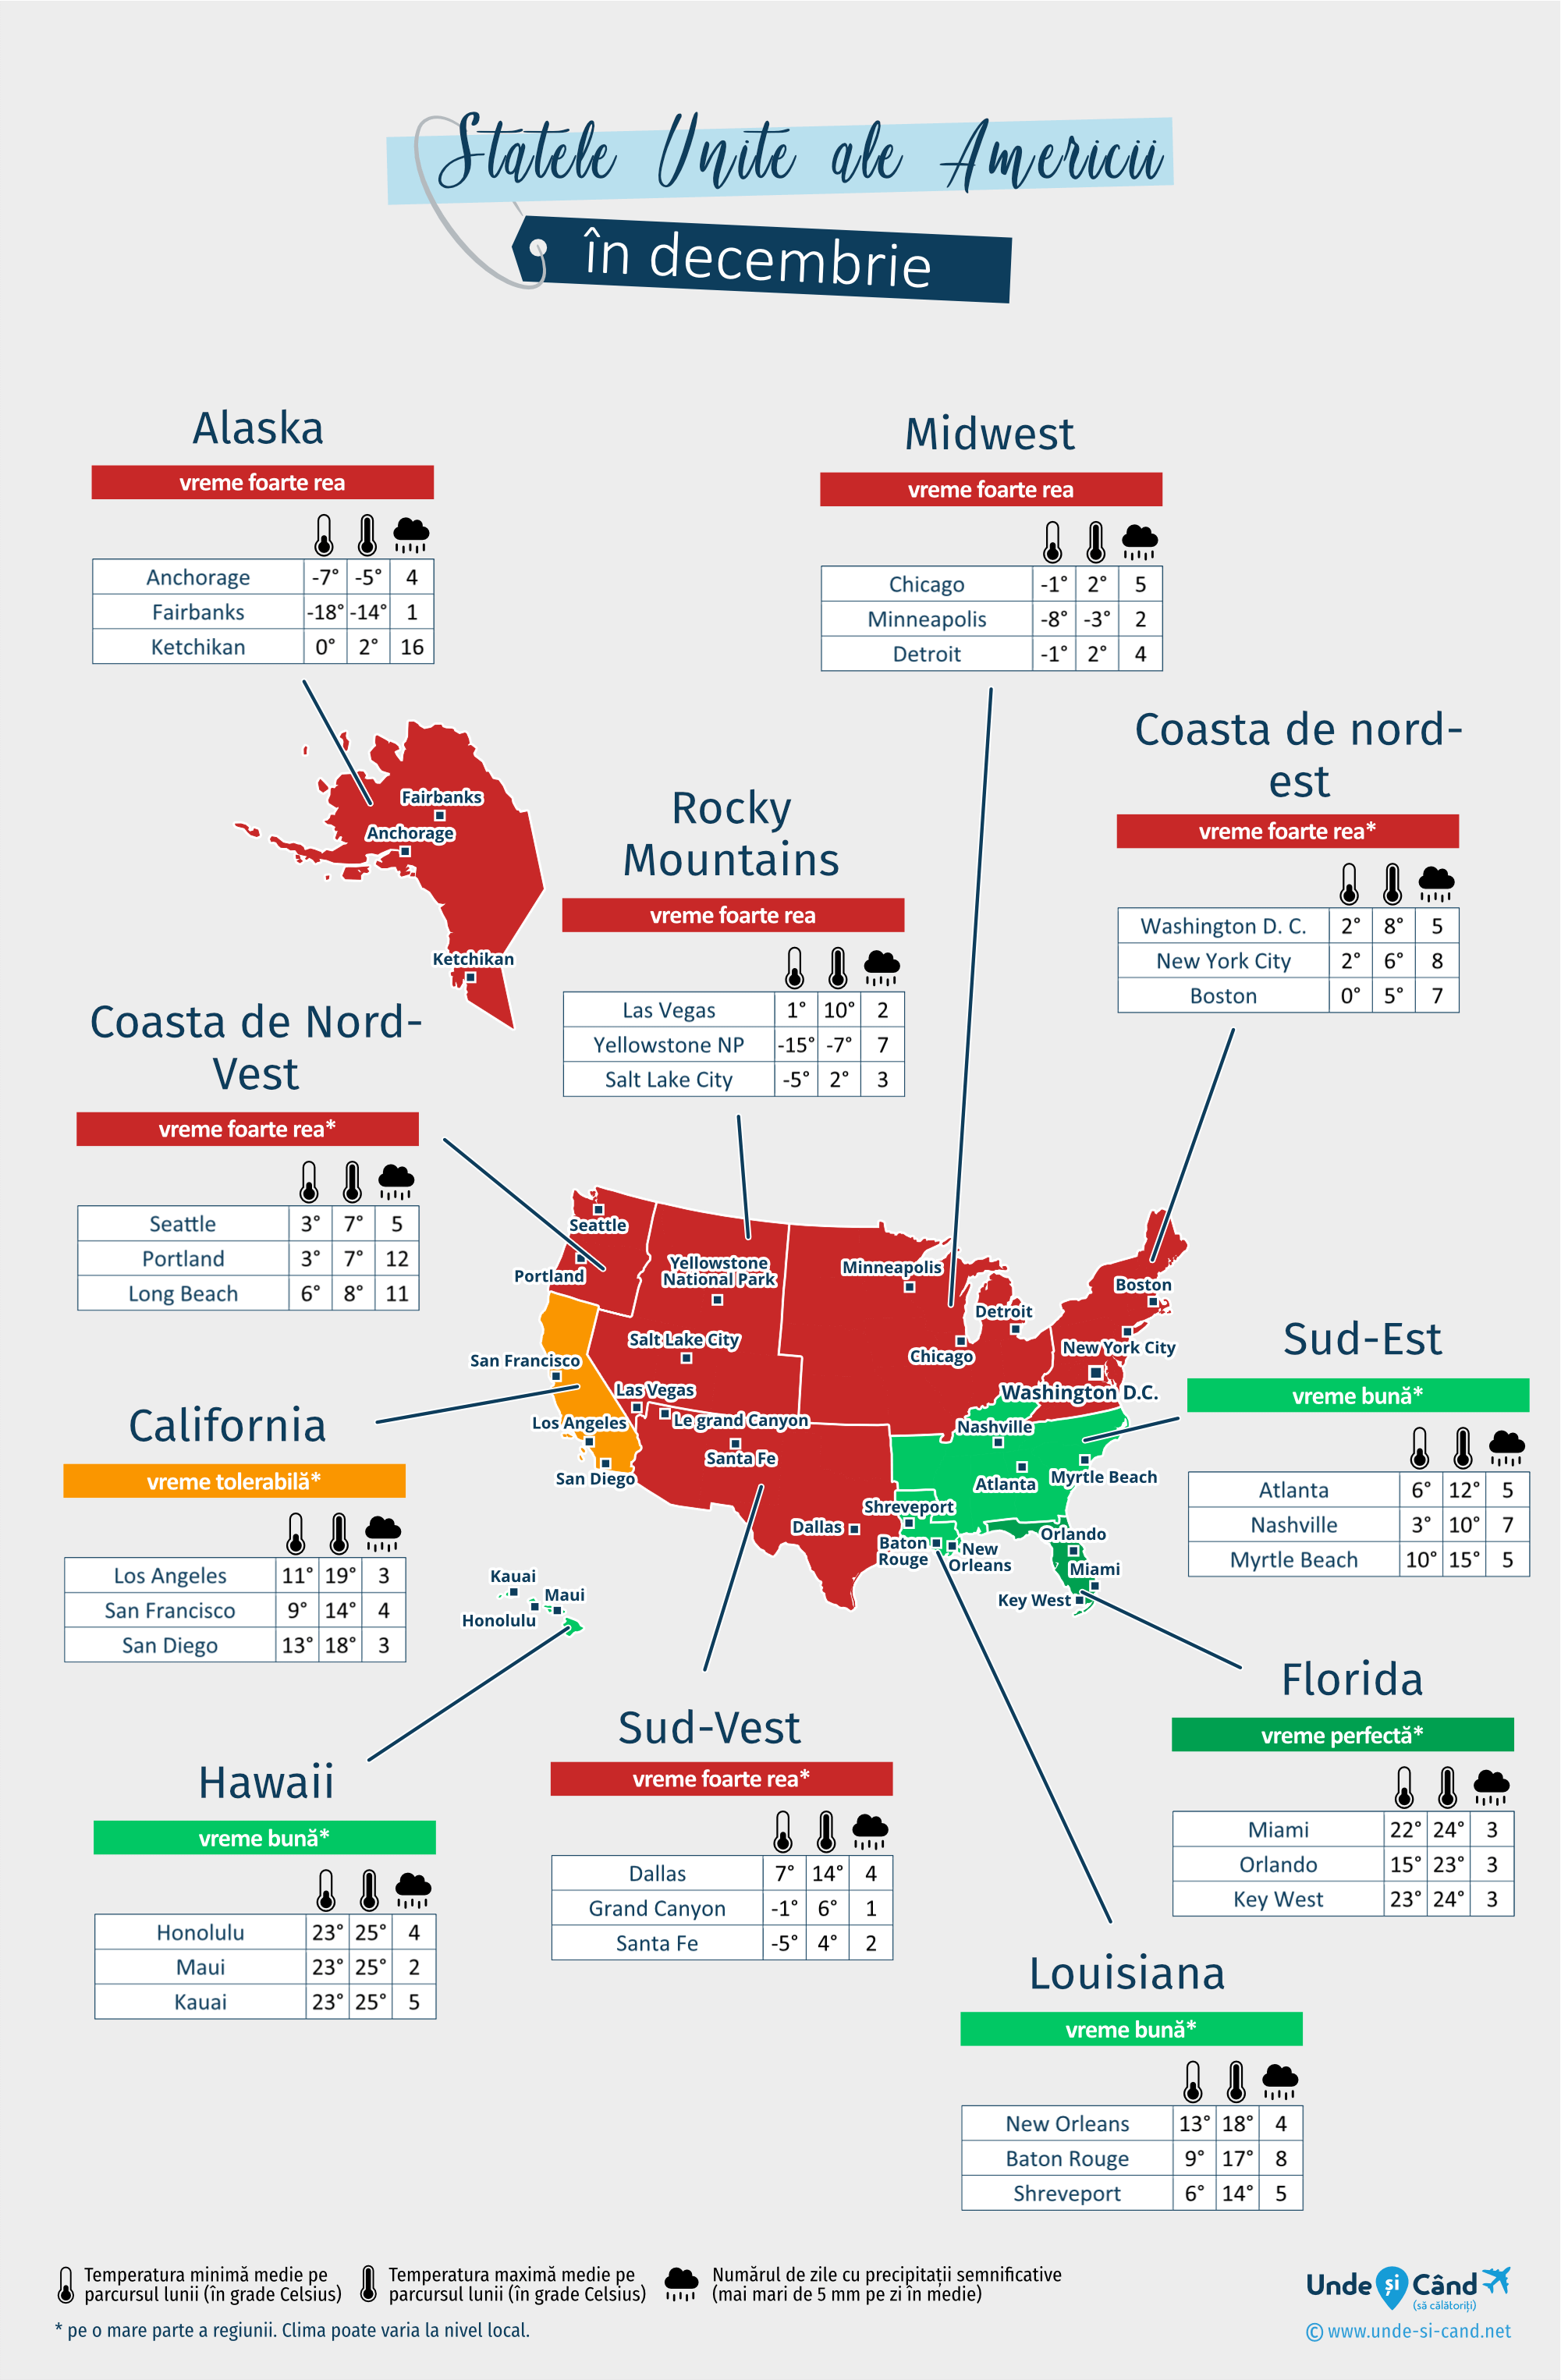 Statele Unite ale Americii: harta vremii în luna decembrie în diferite regiuni